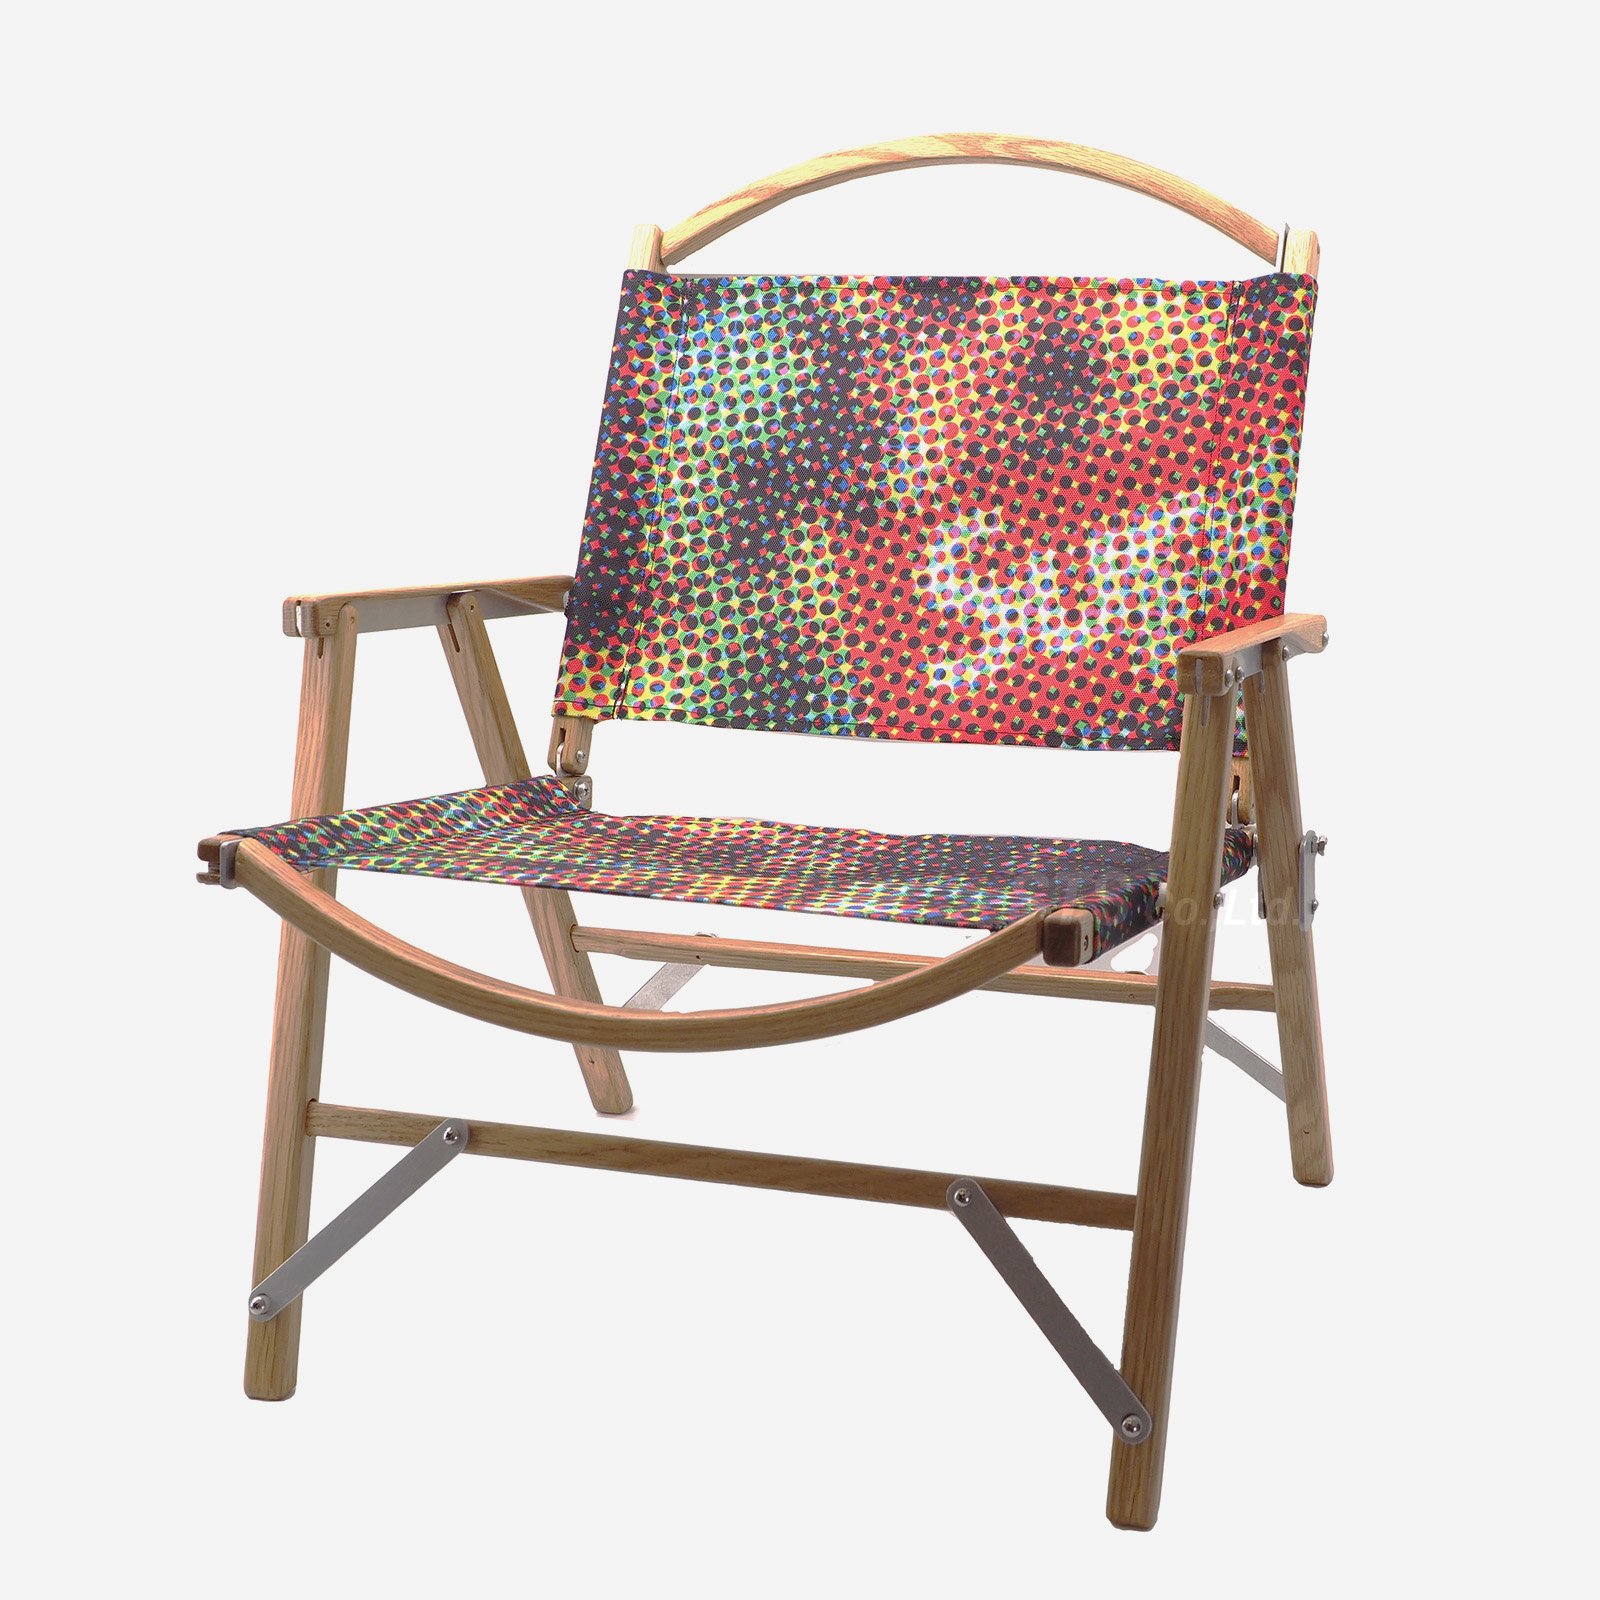 【即完売品】Supreme Kermit Chair Multicolor